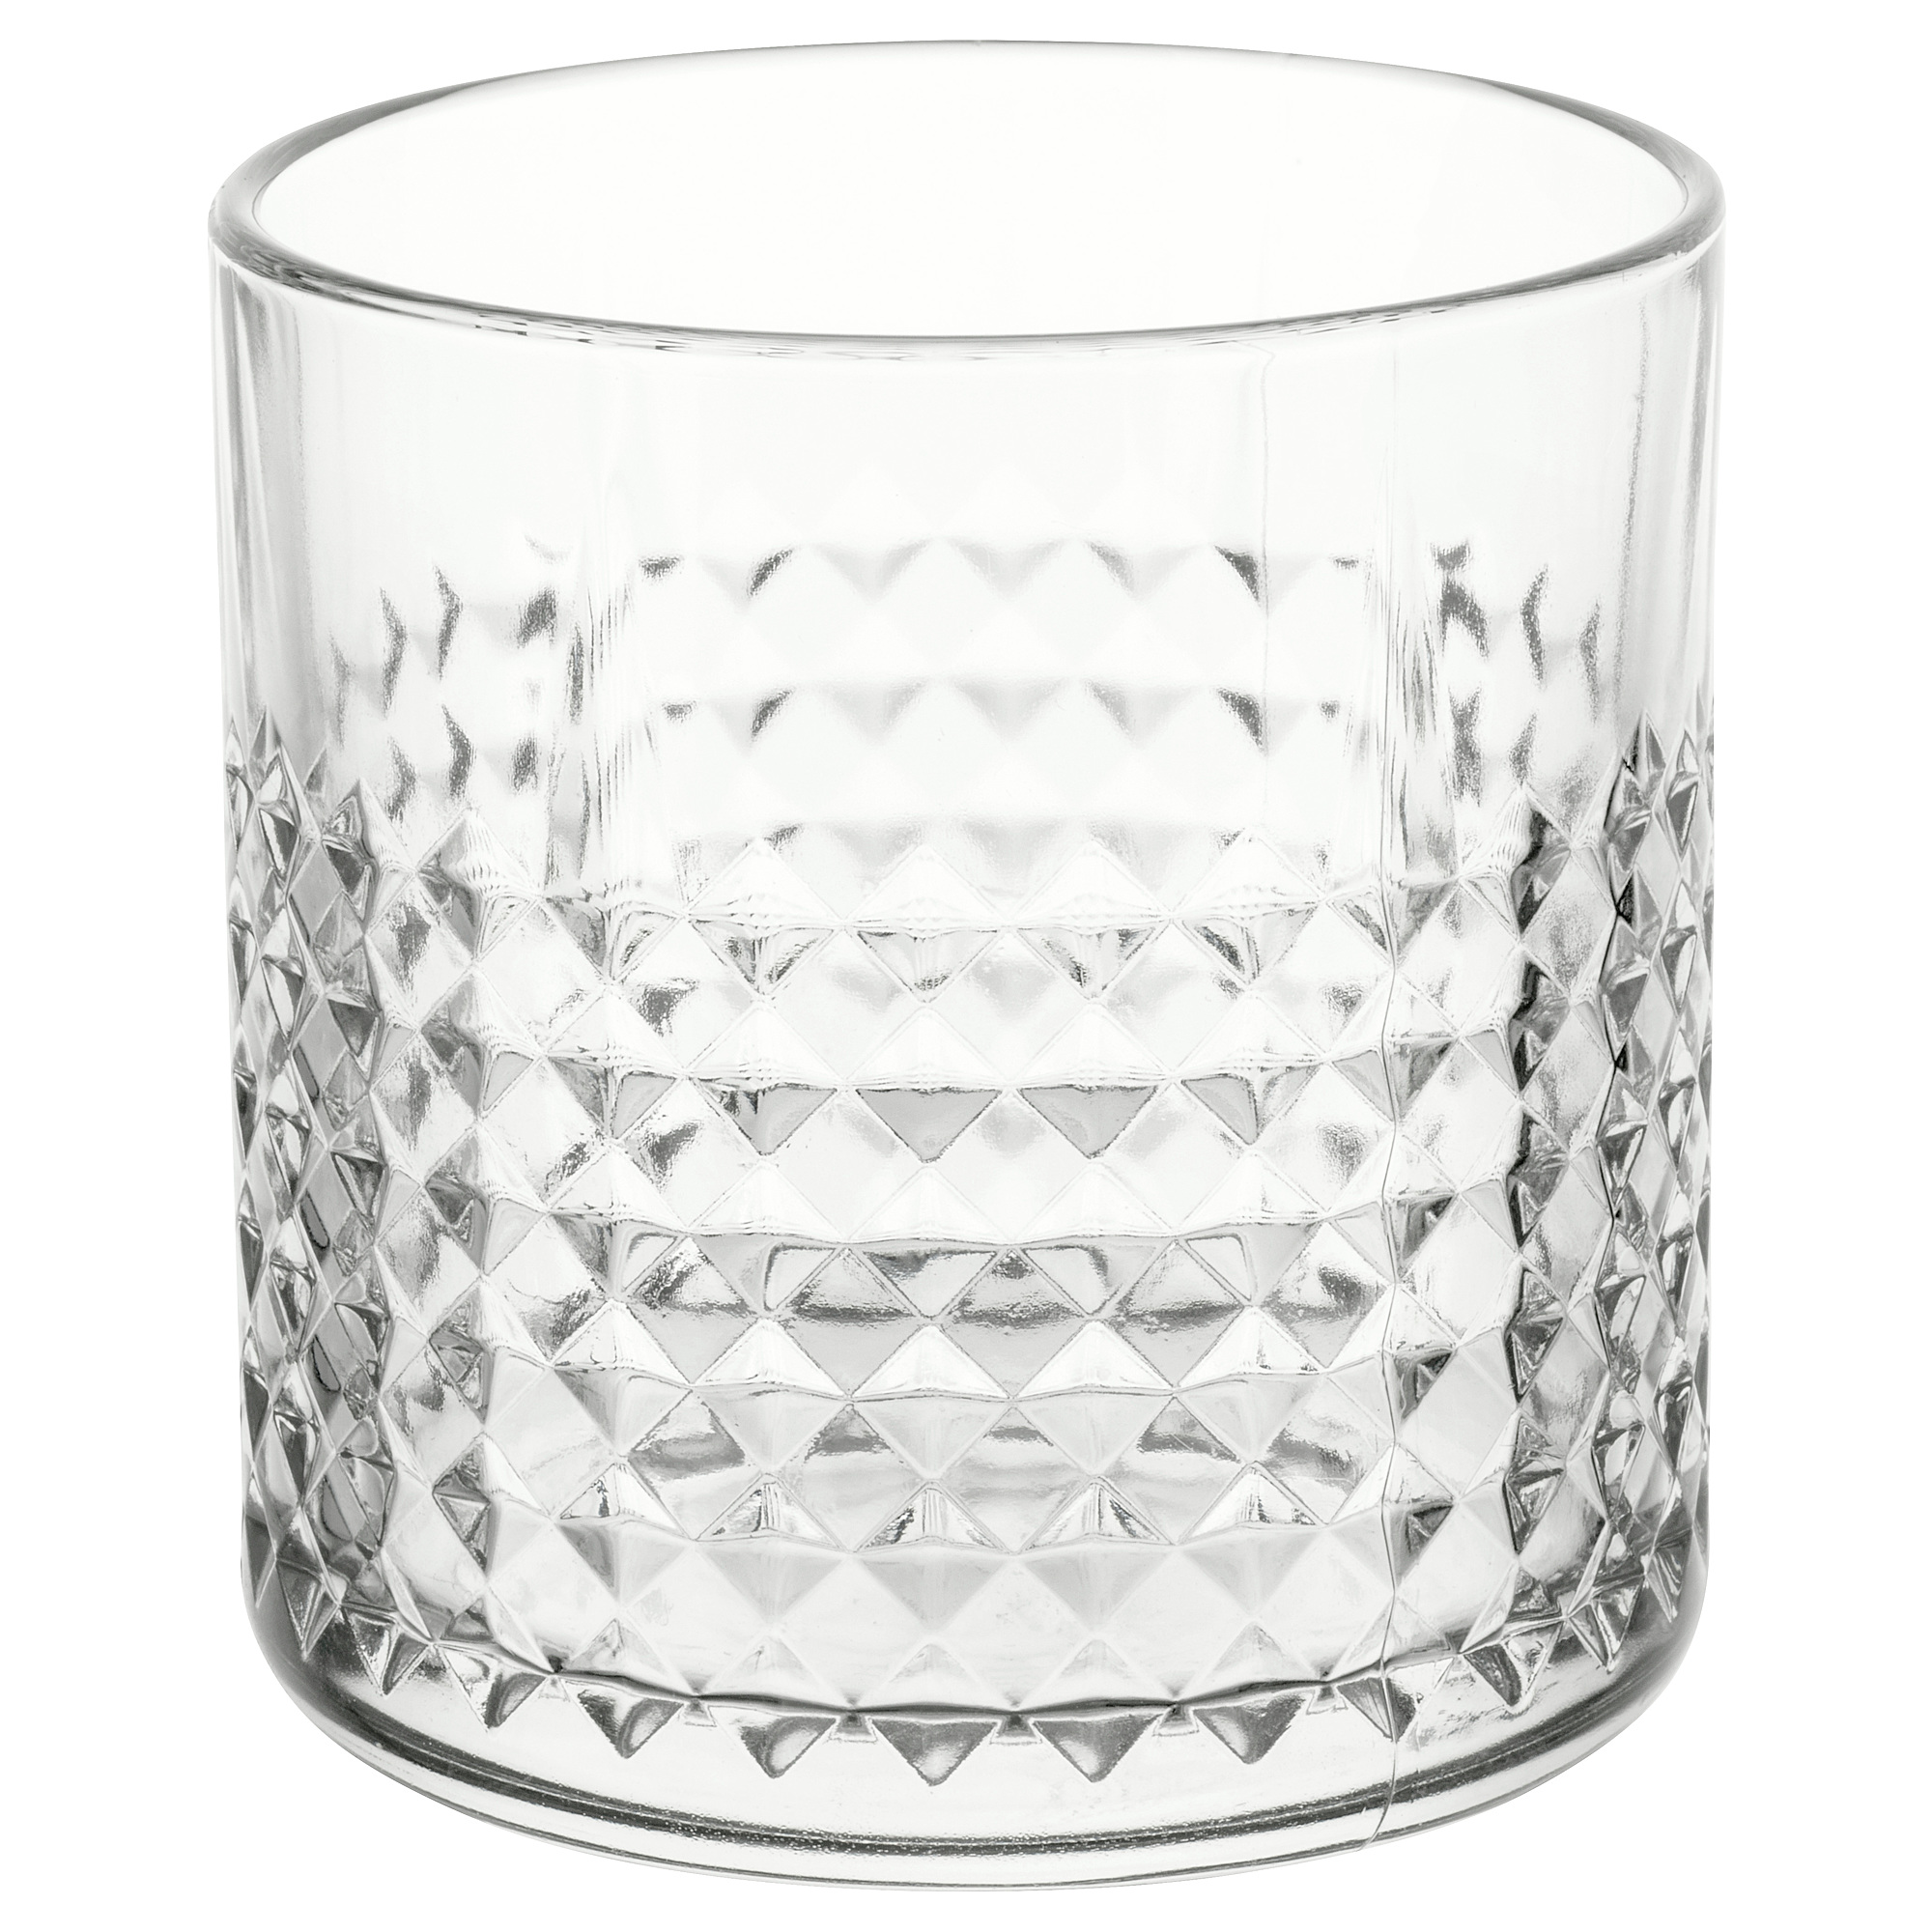 FRASERA whiskey glass